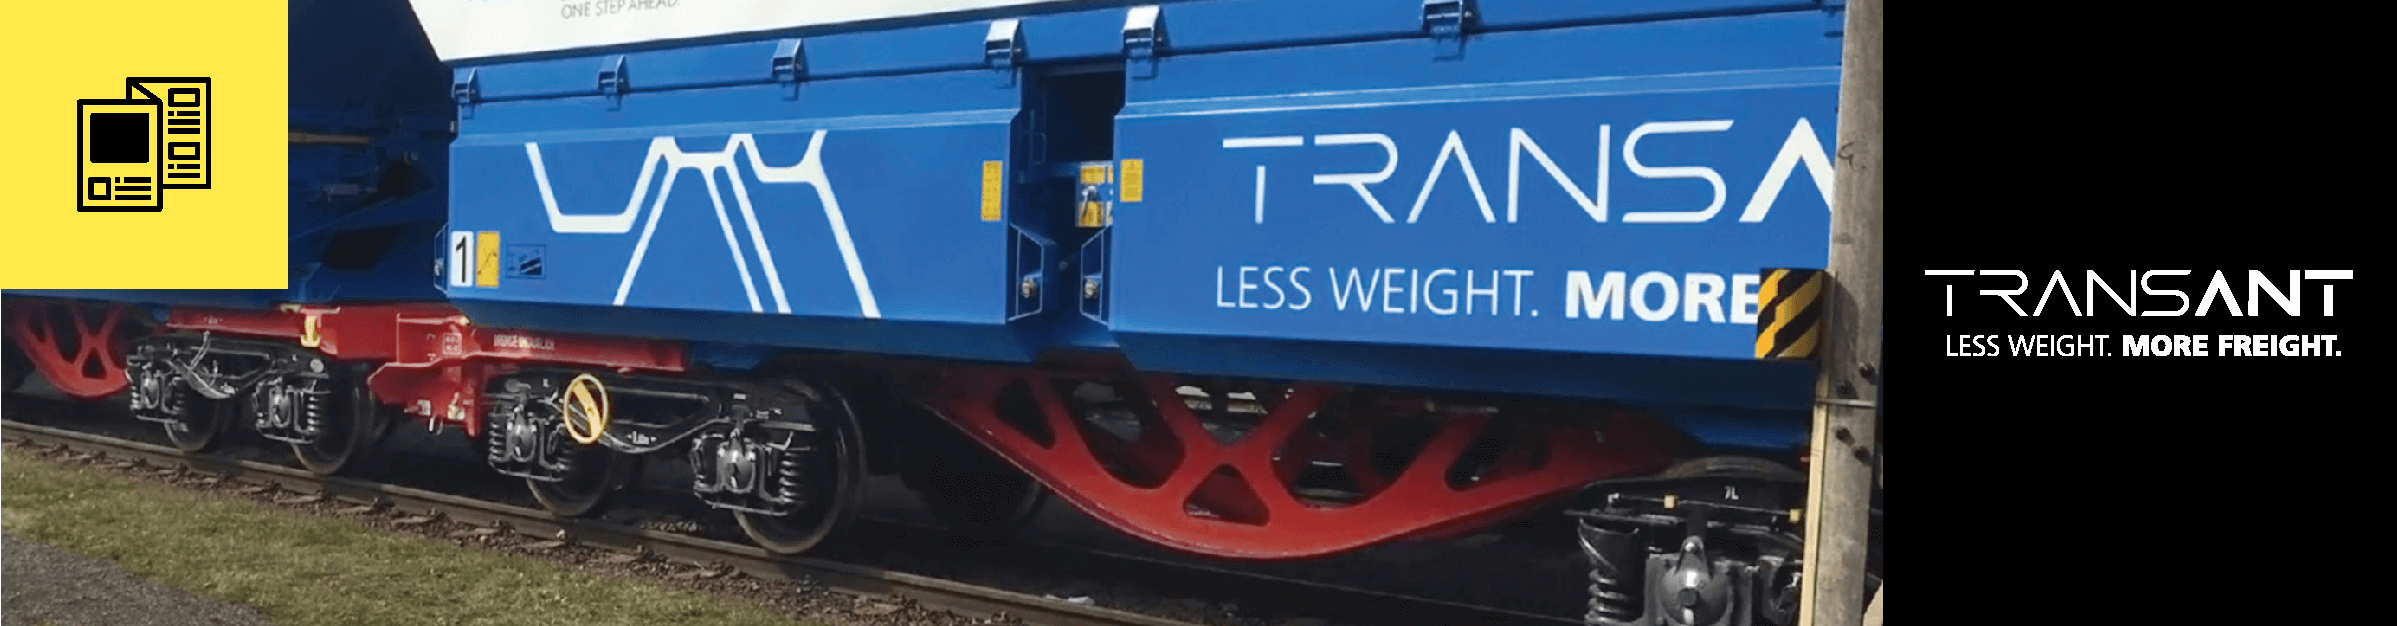 Case study: TransANT – Prowadzenie zrównoważonego rozwiązania w zakresie ładunków kolejowycha